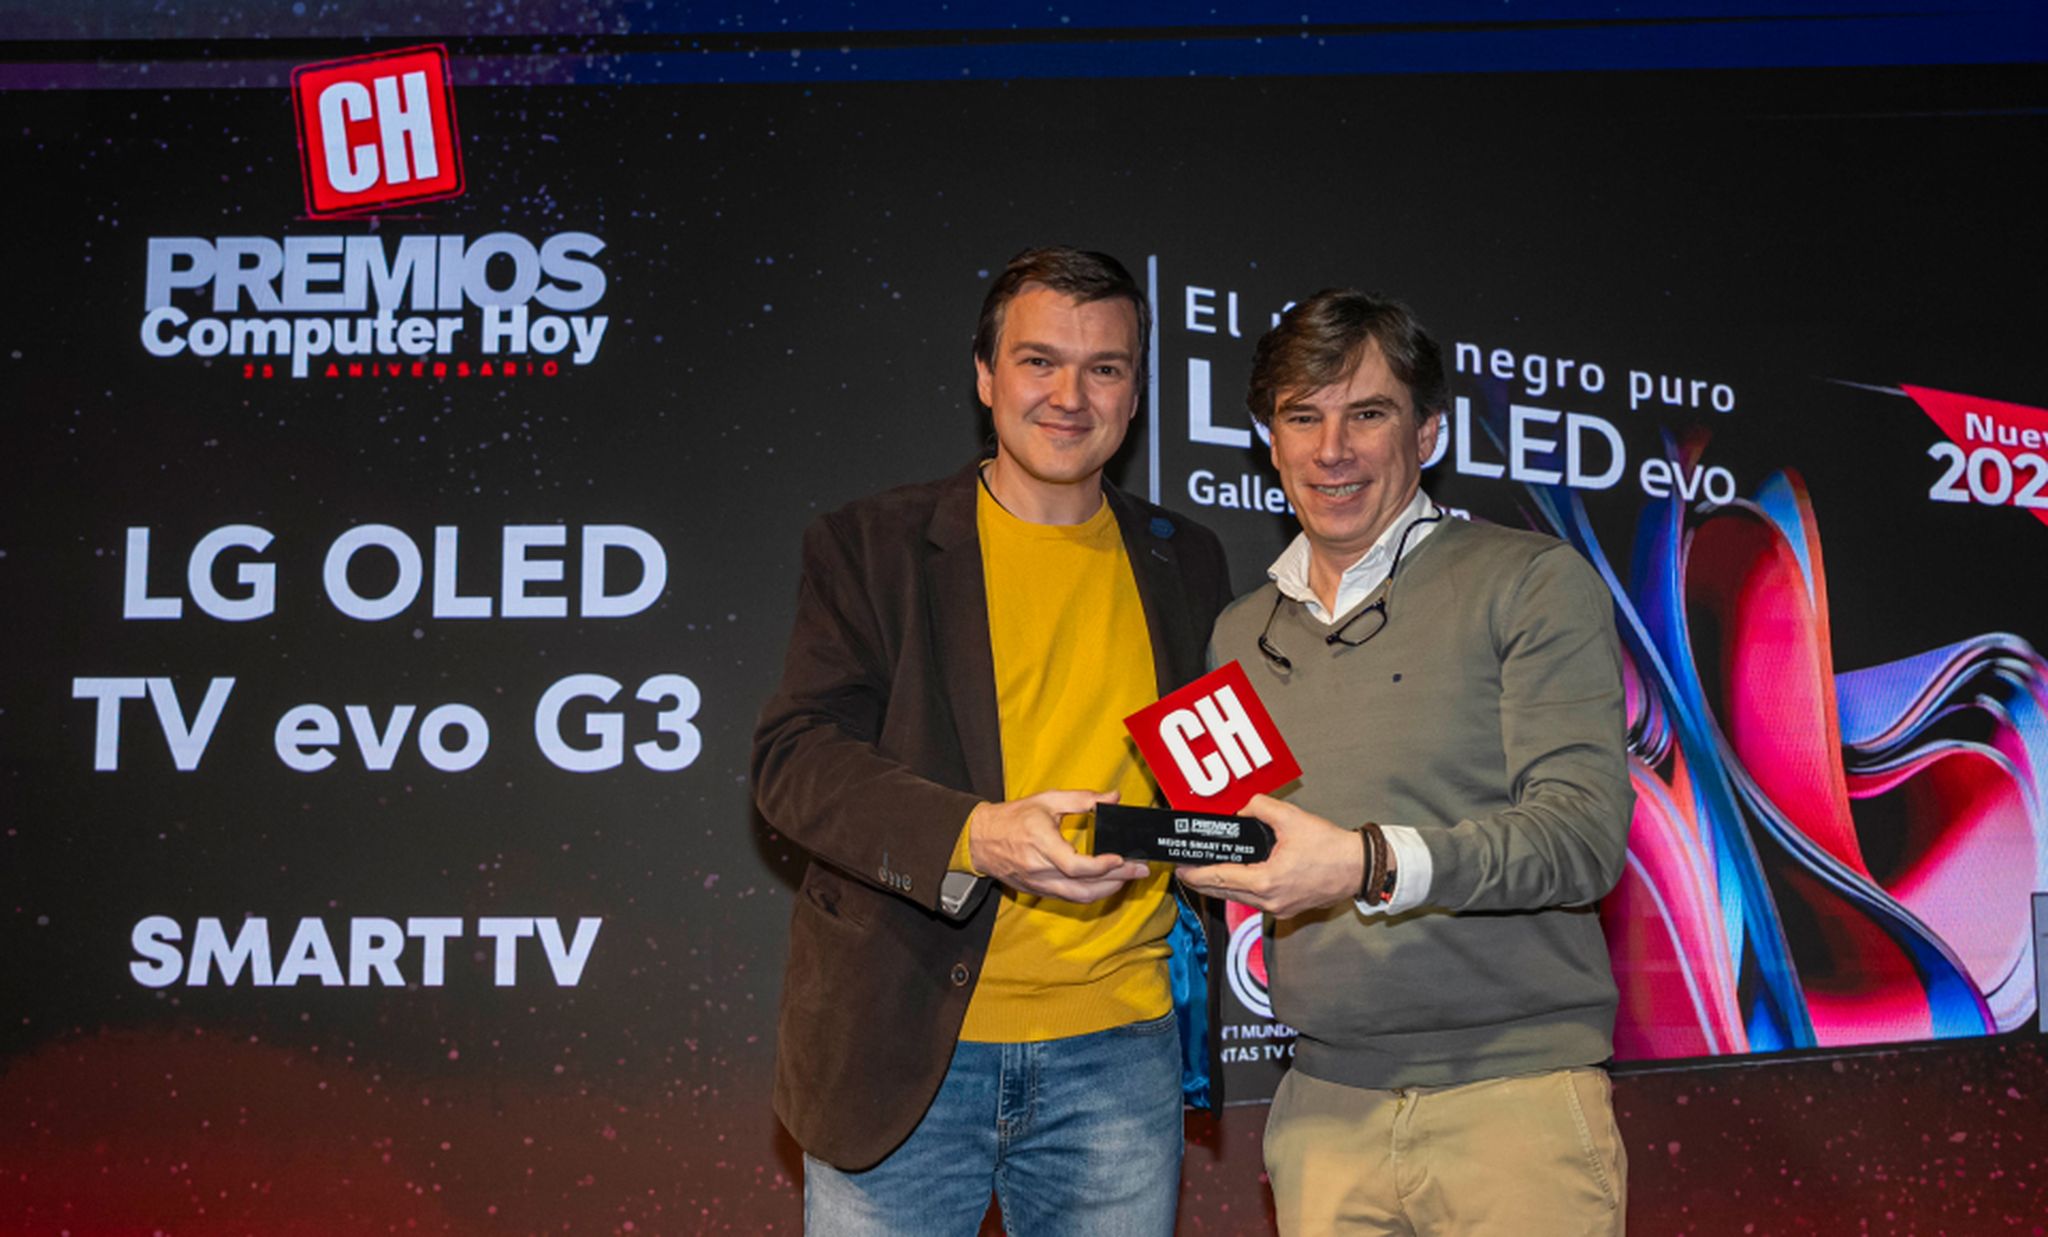 De izquierda a derecha: Carlos Gombau, redactor jefe de la revista Computer Hoy, y Miguel Ángel Fernández, director de Marketing de LG España.